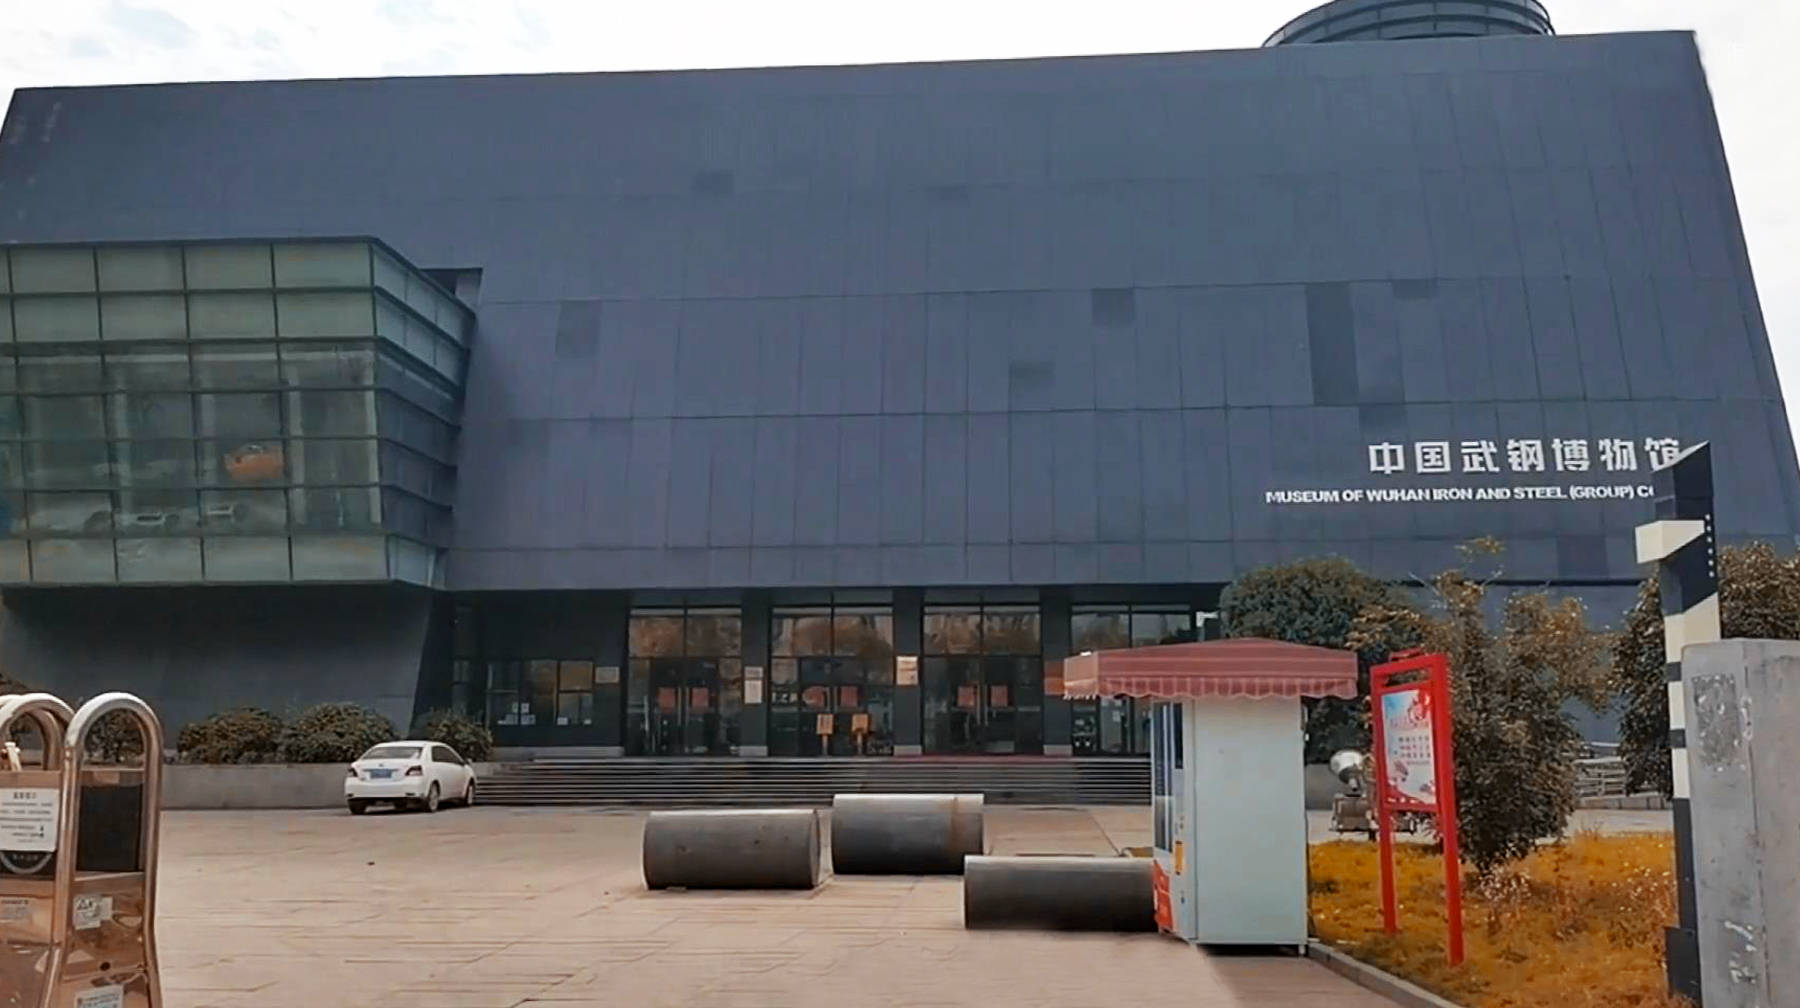 相对武汉其他区来说,再也没有比青山区更加合适建设武钢博物馆的地方